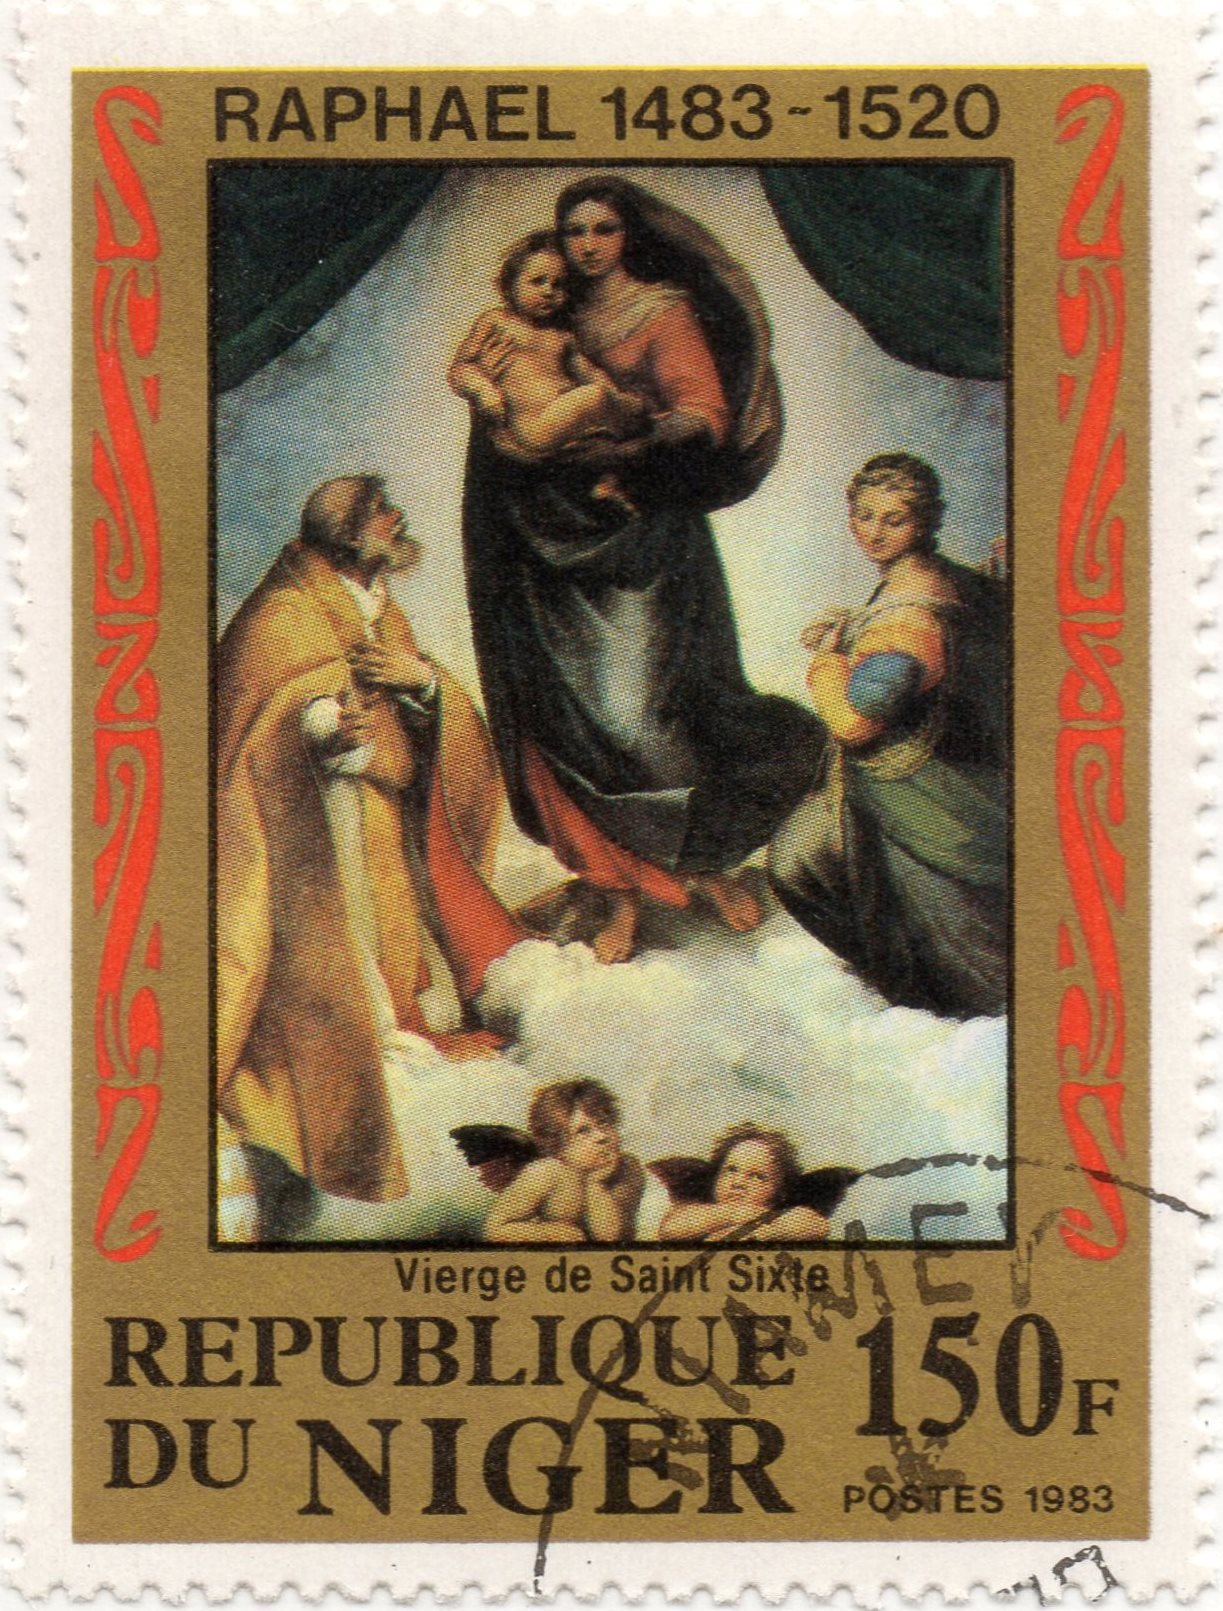 nft #4 Madonna di San Sisto Raphael 1483 - 1520 Republic of Niger 150 f. postes 1983